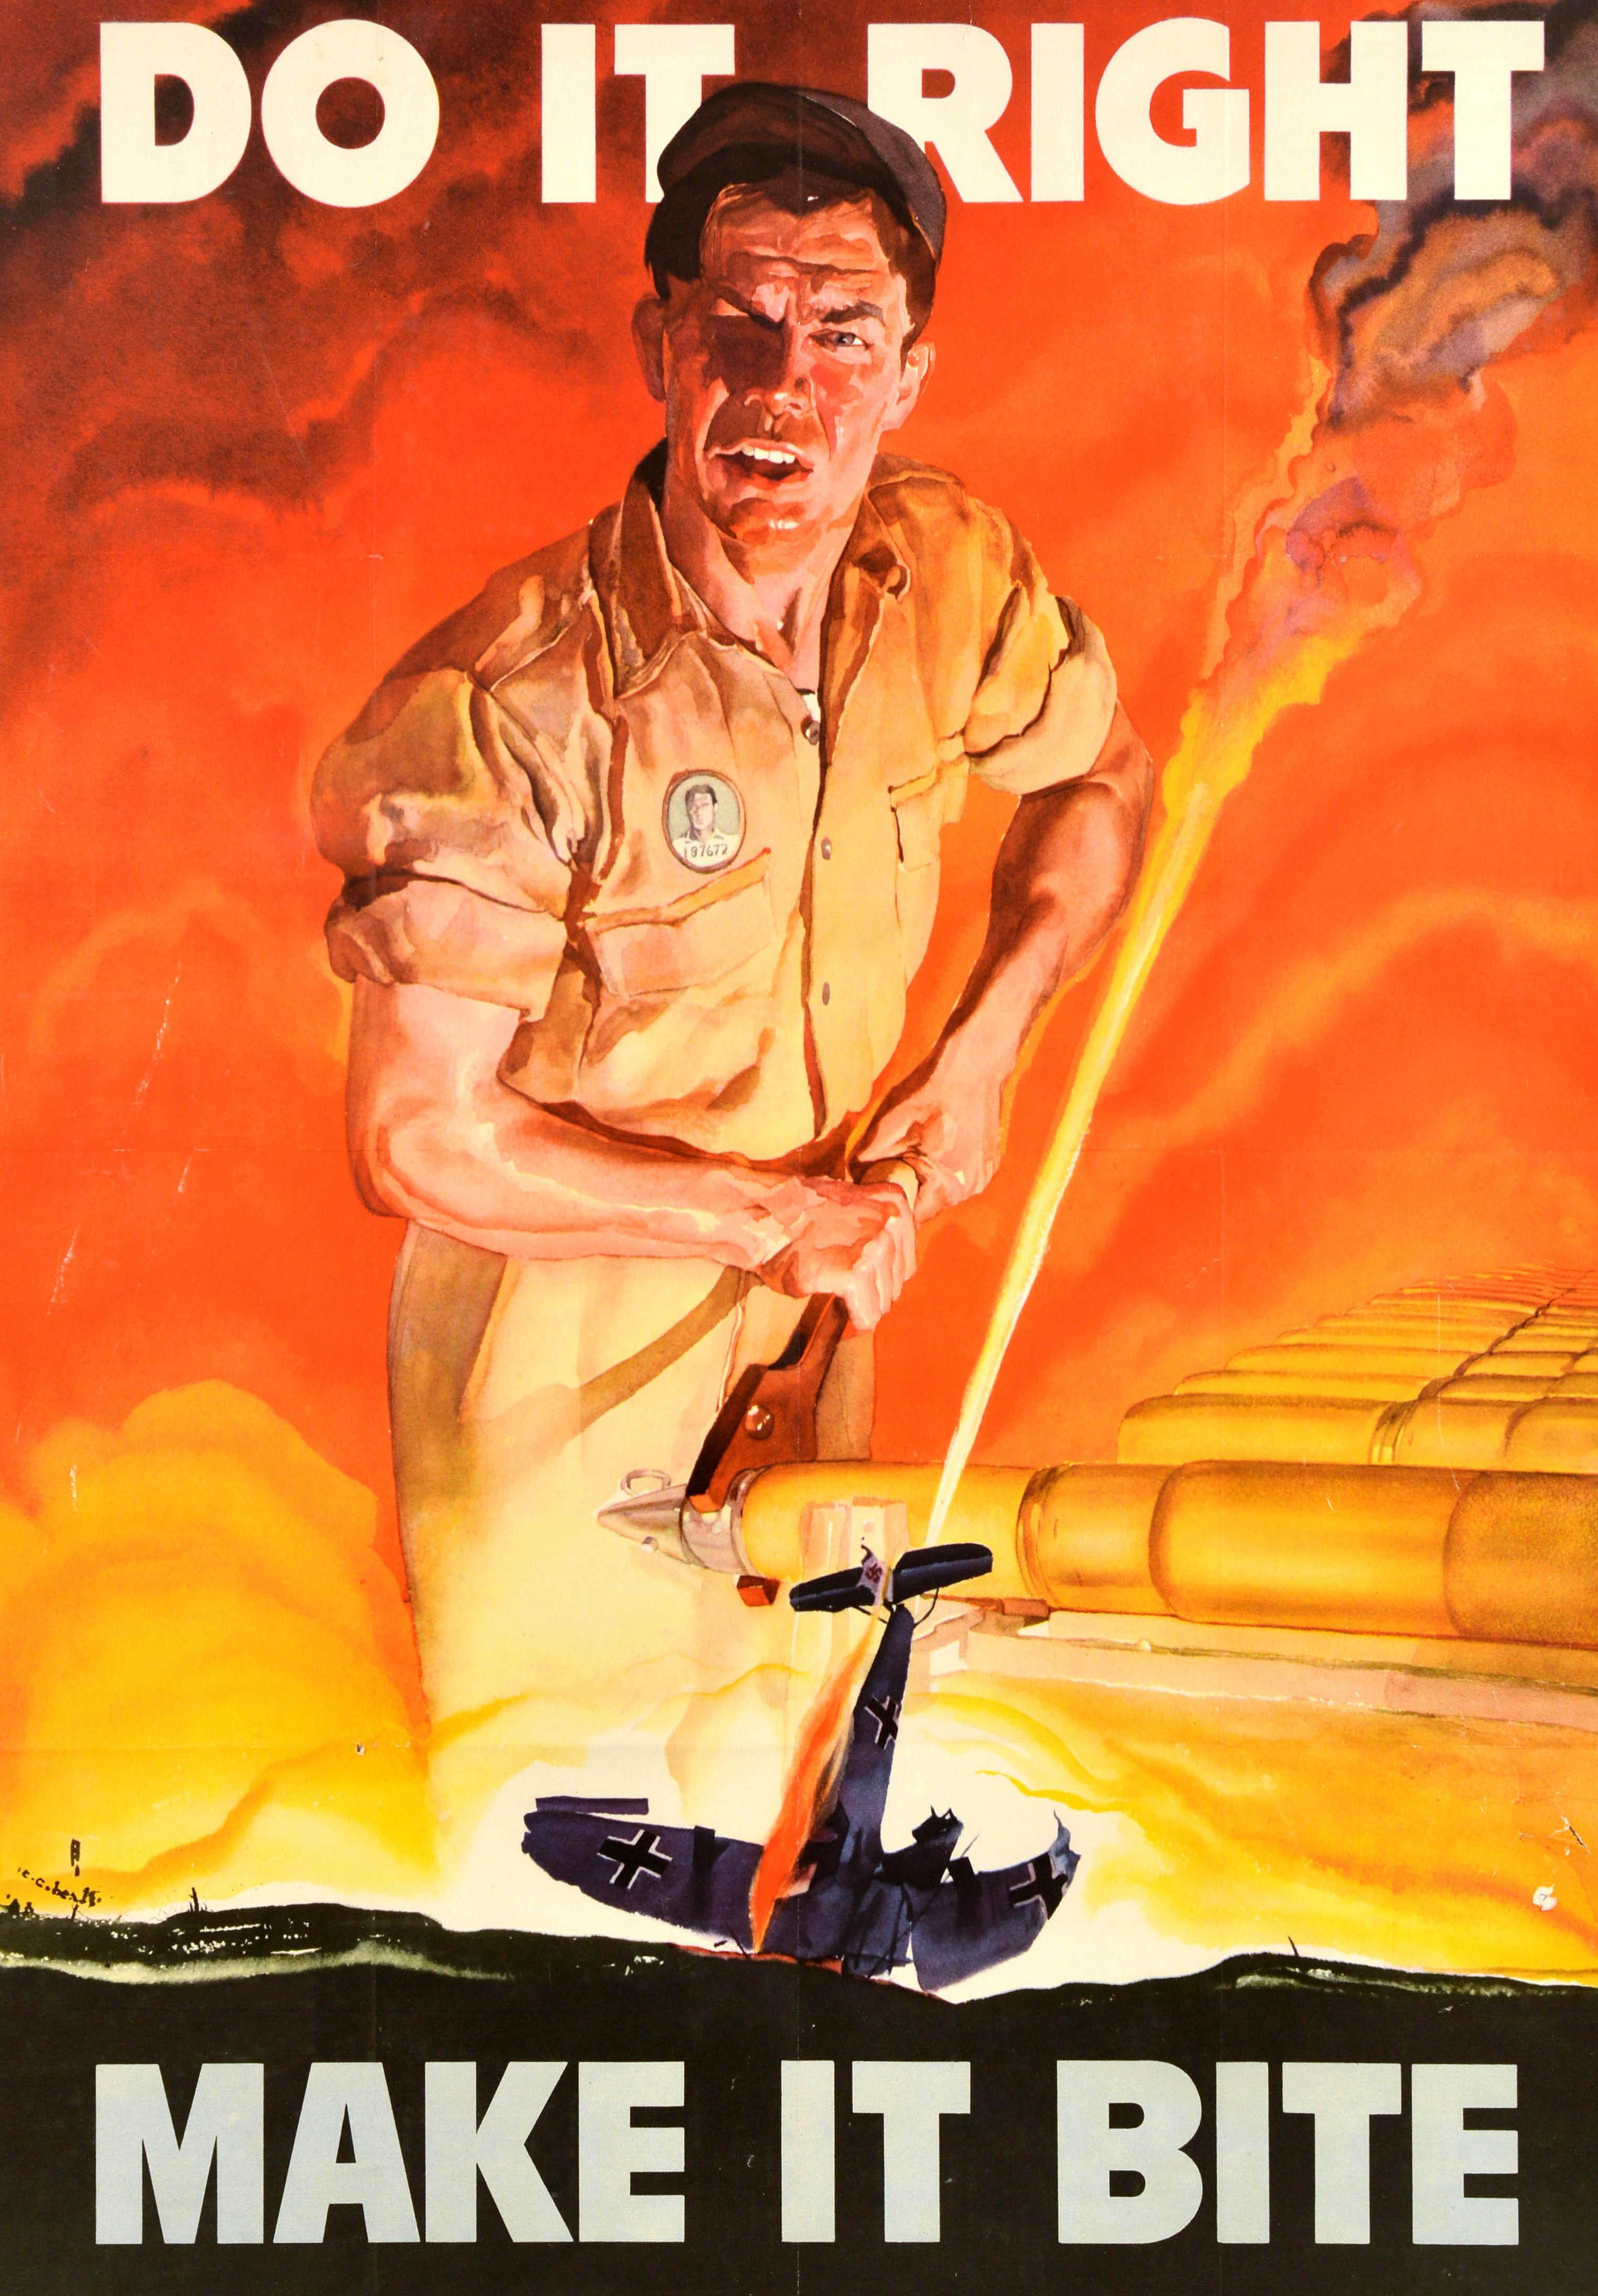 Affiche originale de production du front intérieur de la Seconde Guerre mondiale - Do It Right Make It Bite - comportant une image dynamique de l'illustrateur et aquarelliste américain Cecil Calvert Beall (1892-1967) représentant un ouvrier dans une